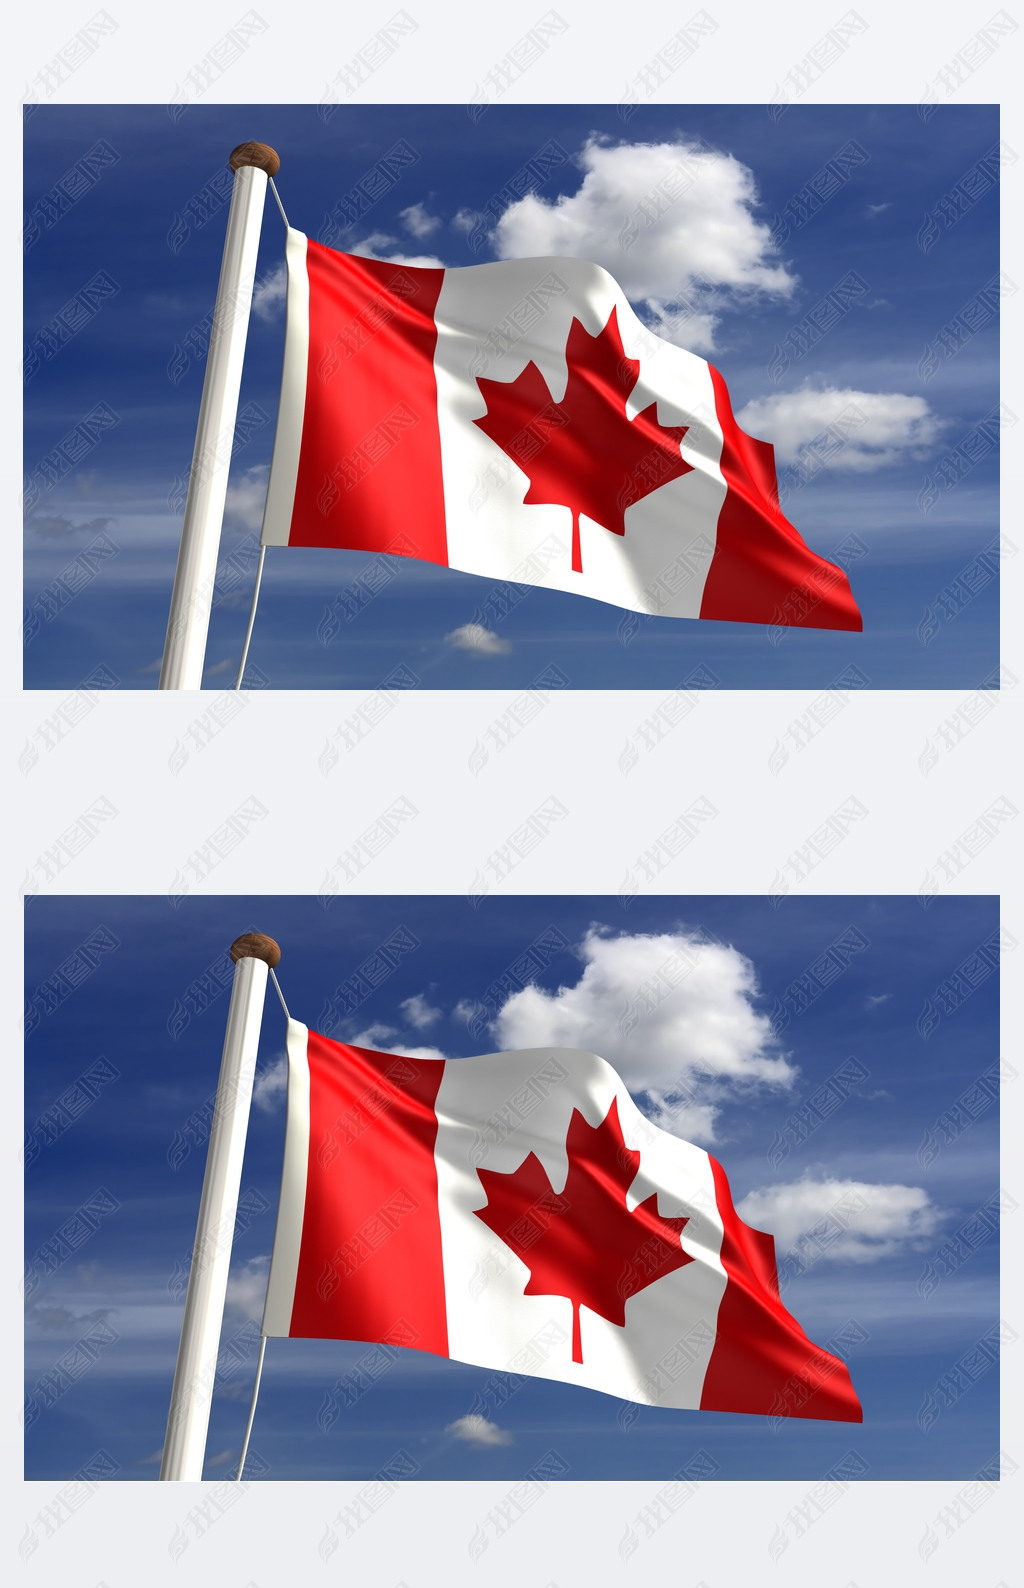 原创加拿大国旗与剪切路径版权可商用